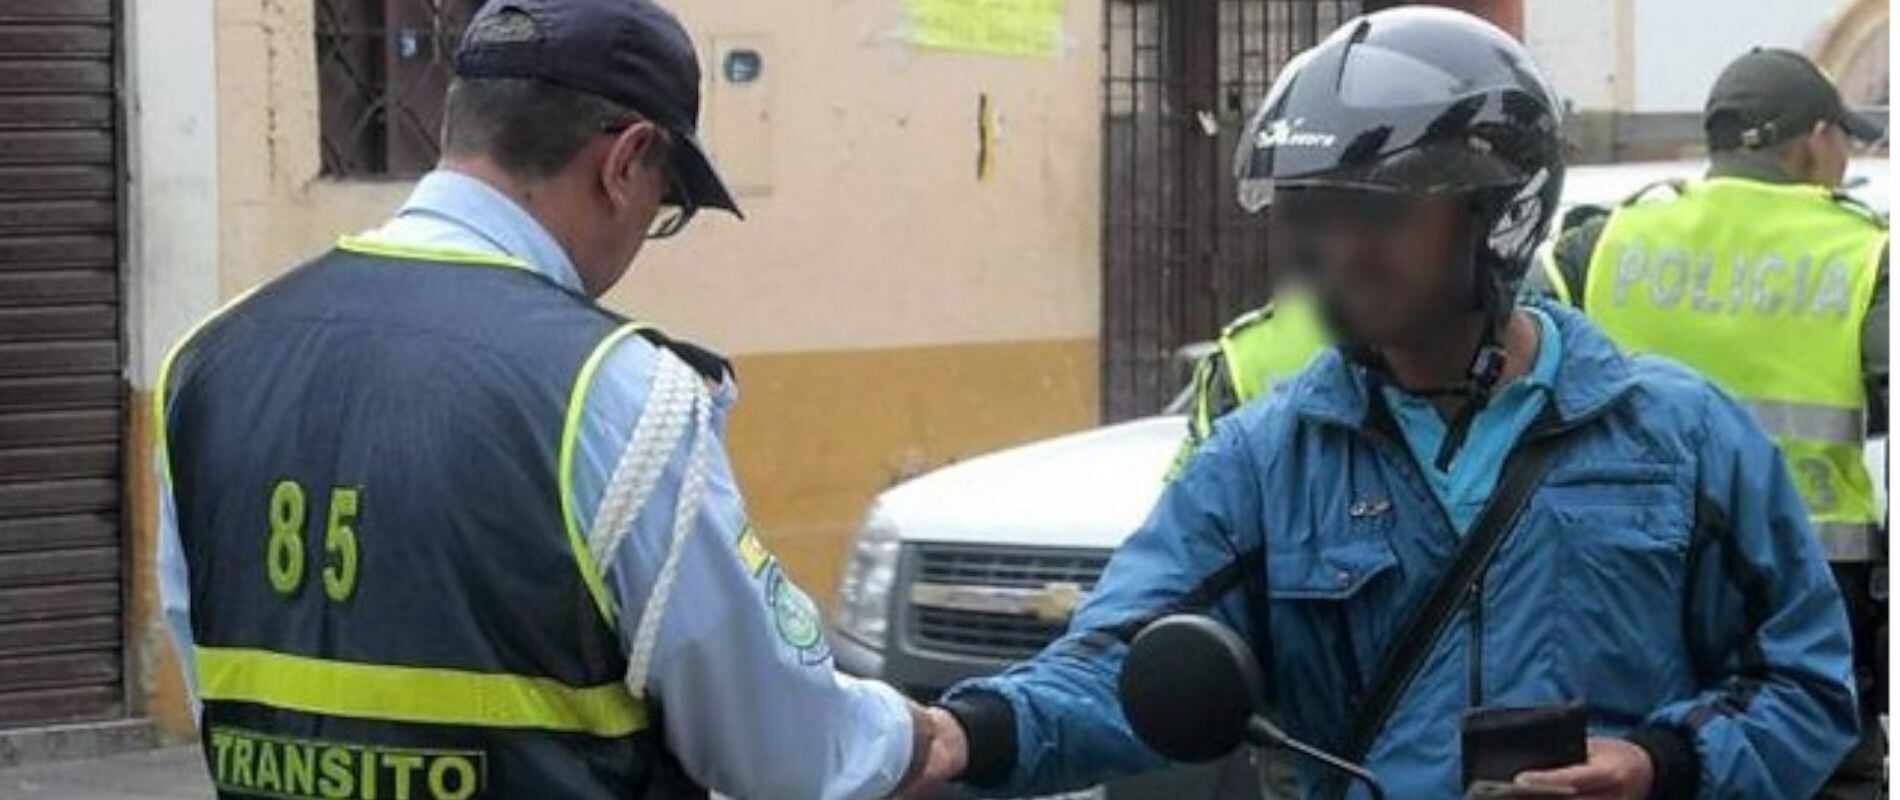 Aunque en Bogotá se tiene planeado reemplazar a los policías de tránsito por agentes civiles de movilidad, todavía no se están haciendo contrataciones para este cargo en la ciudad. Foto: Colprensa